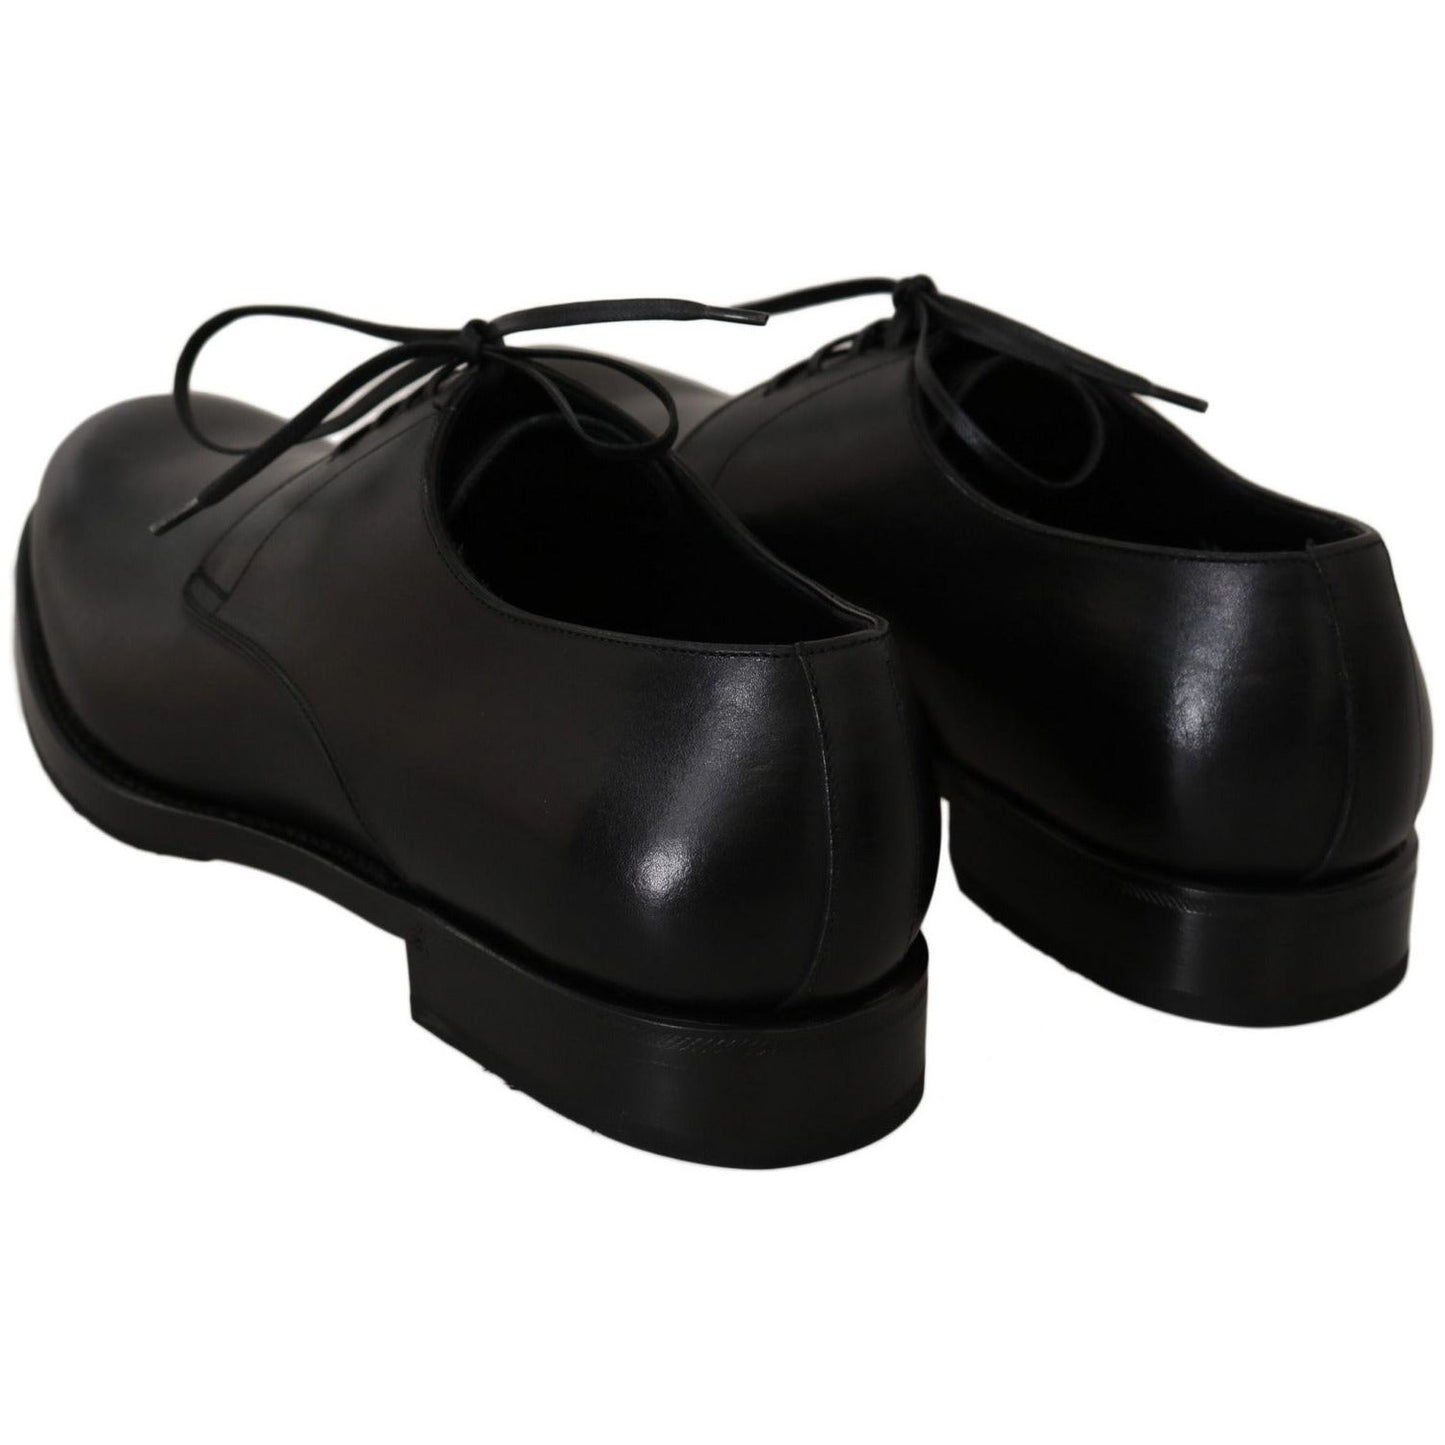 Dolce & Gabbana Elegant Black Leather Derby Dress Shoes Dress Shoes black-leather-derby-formal-dress-shoes